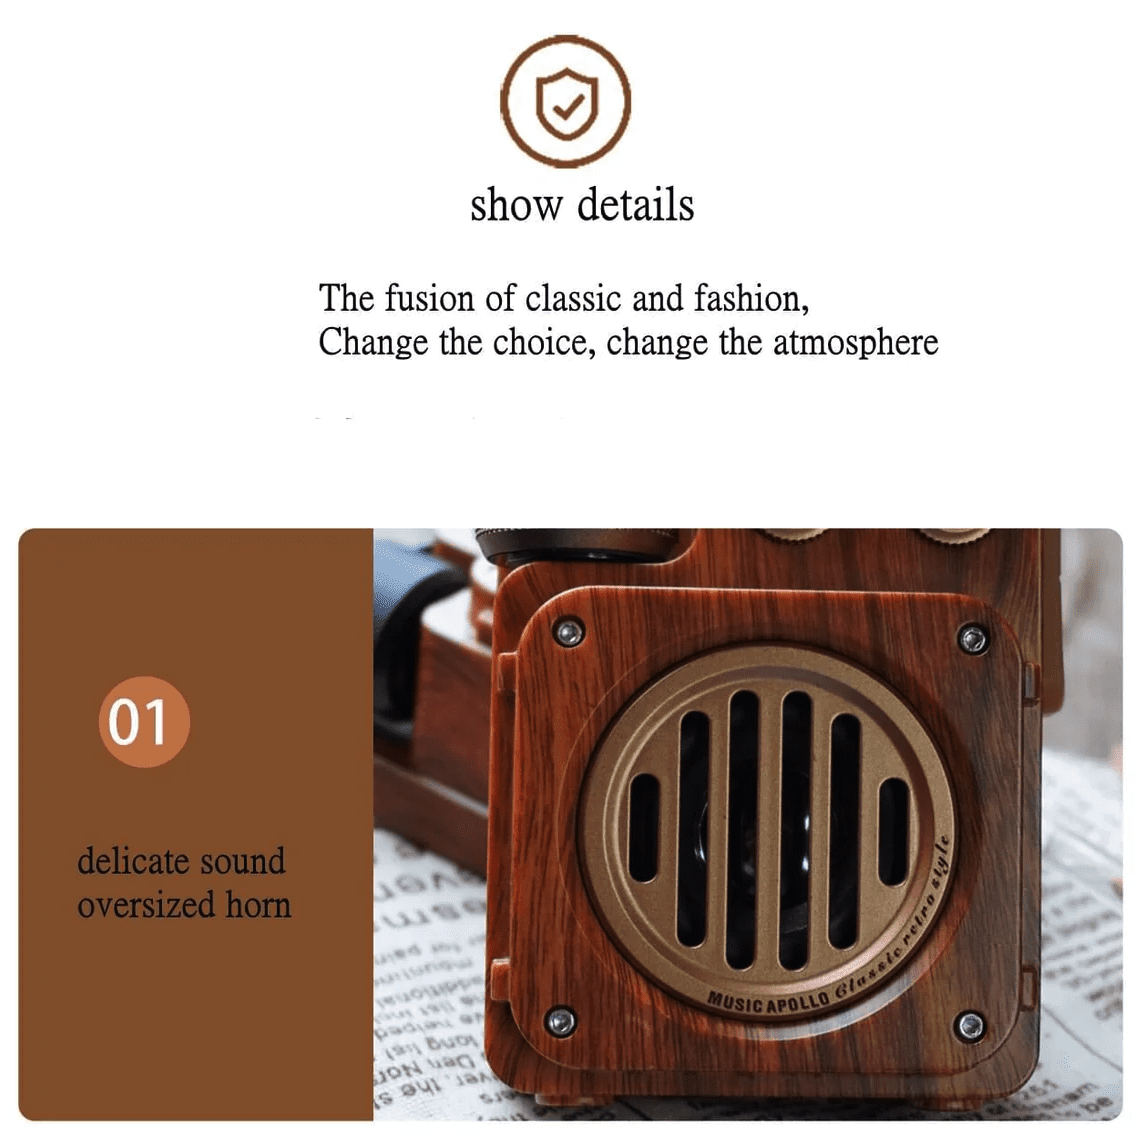 радио, изработено от дърво, ретро дизайн на приемник